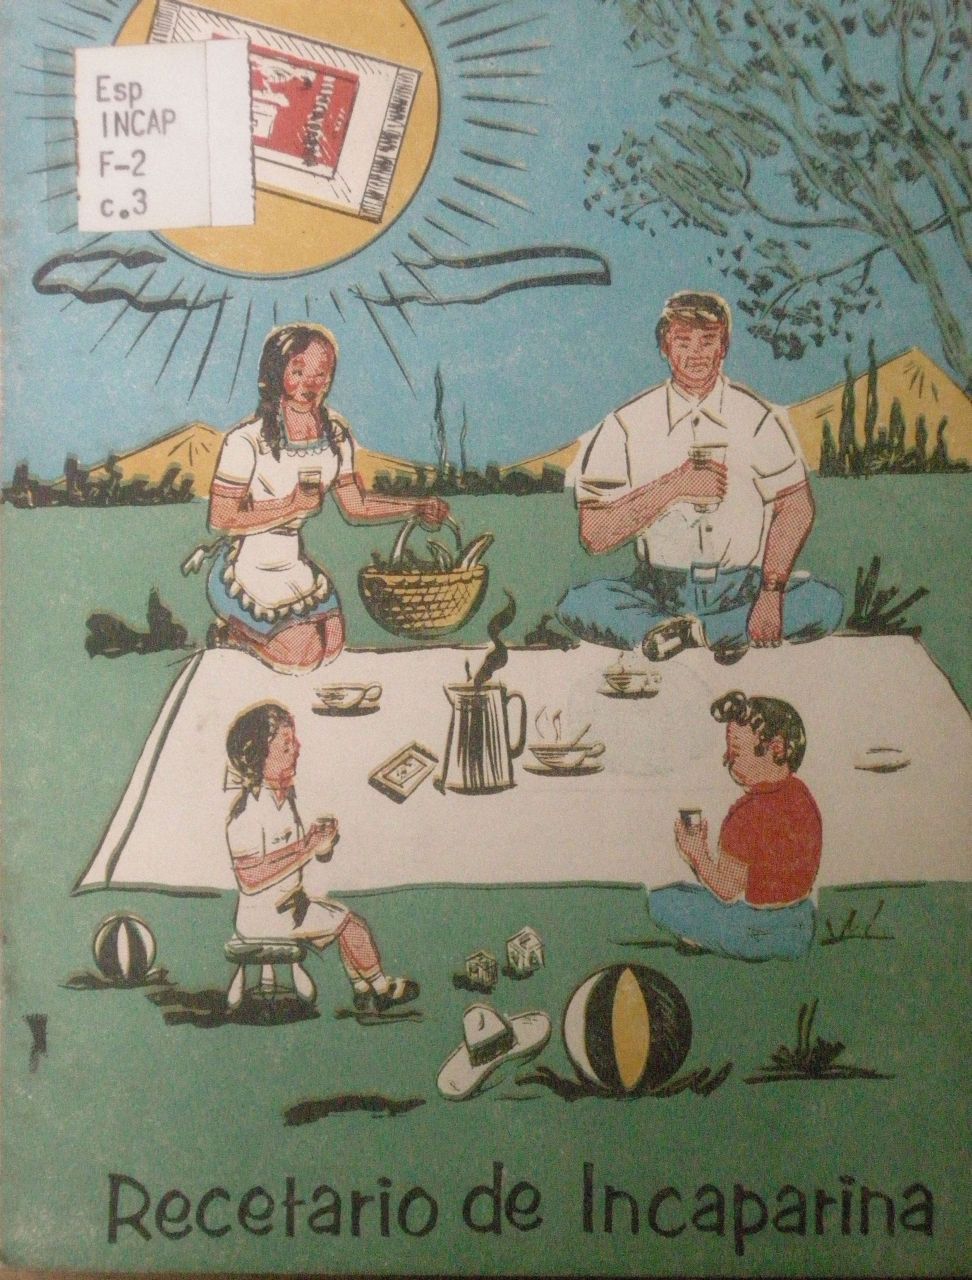 Werbe-Illustration des Ersatz-Produktes "Incaparina". Eine Frau, ein Mann und zwei Kinder trinken Incaparina bei einem Picknick auf einer Wiese. Am unteren Rande des Bildes stehen die Worte "Recetario de Incaparina" 